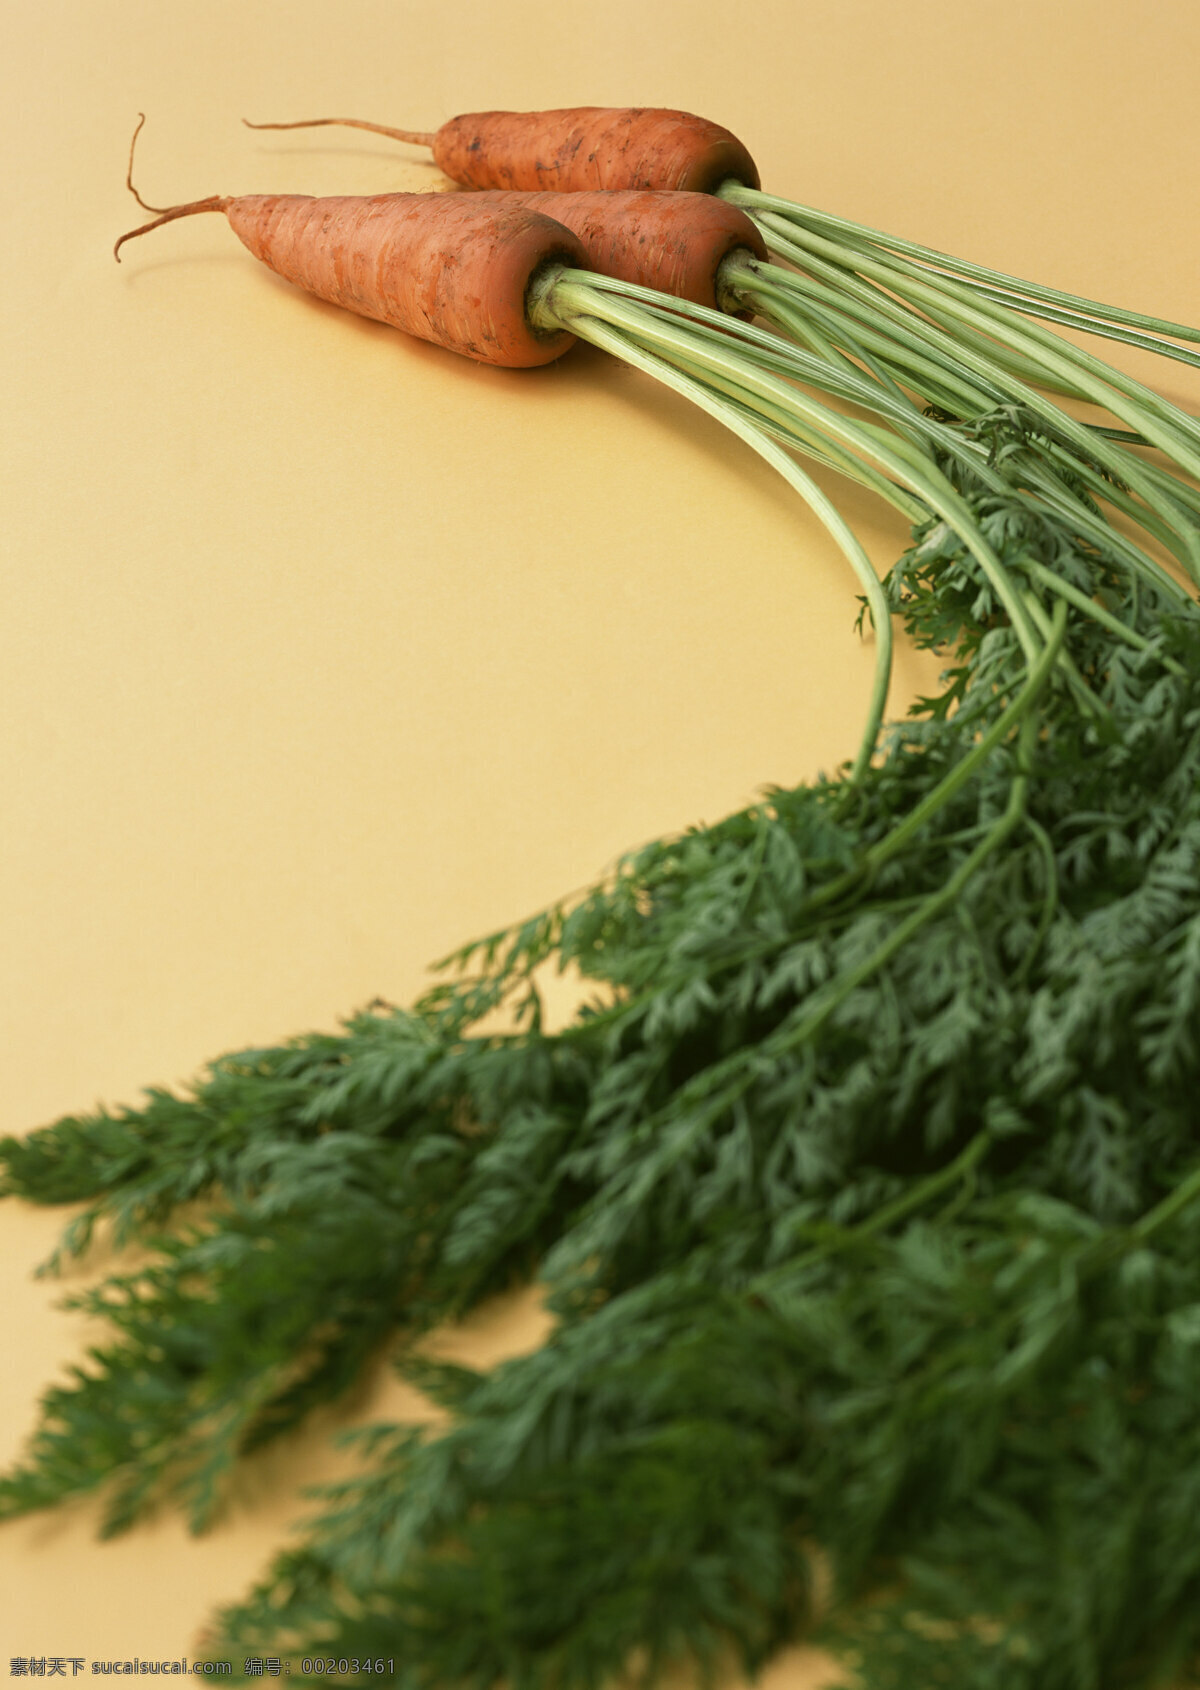 胡萝卜 新鲜蔬菜 萝卜 农作物 绿色食品 摄影图 高清图片 蔬菜图片 餐饮美食